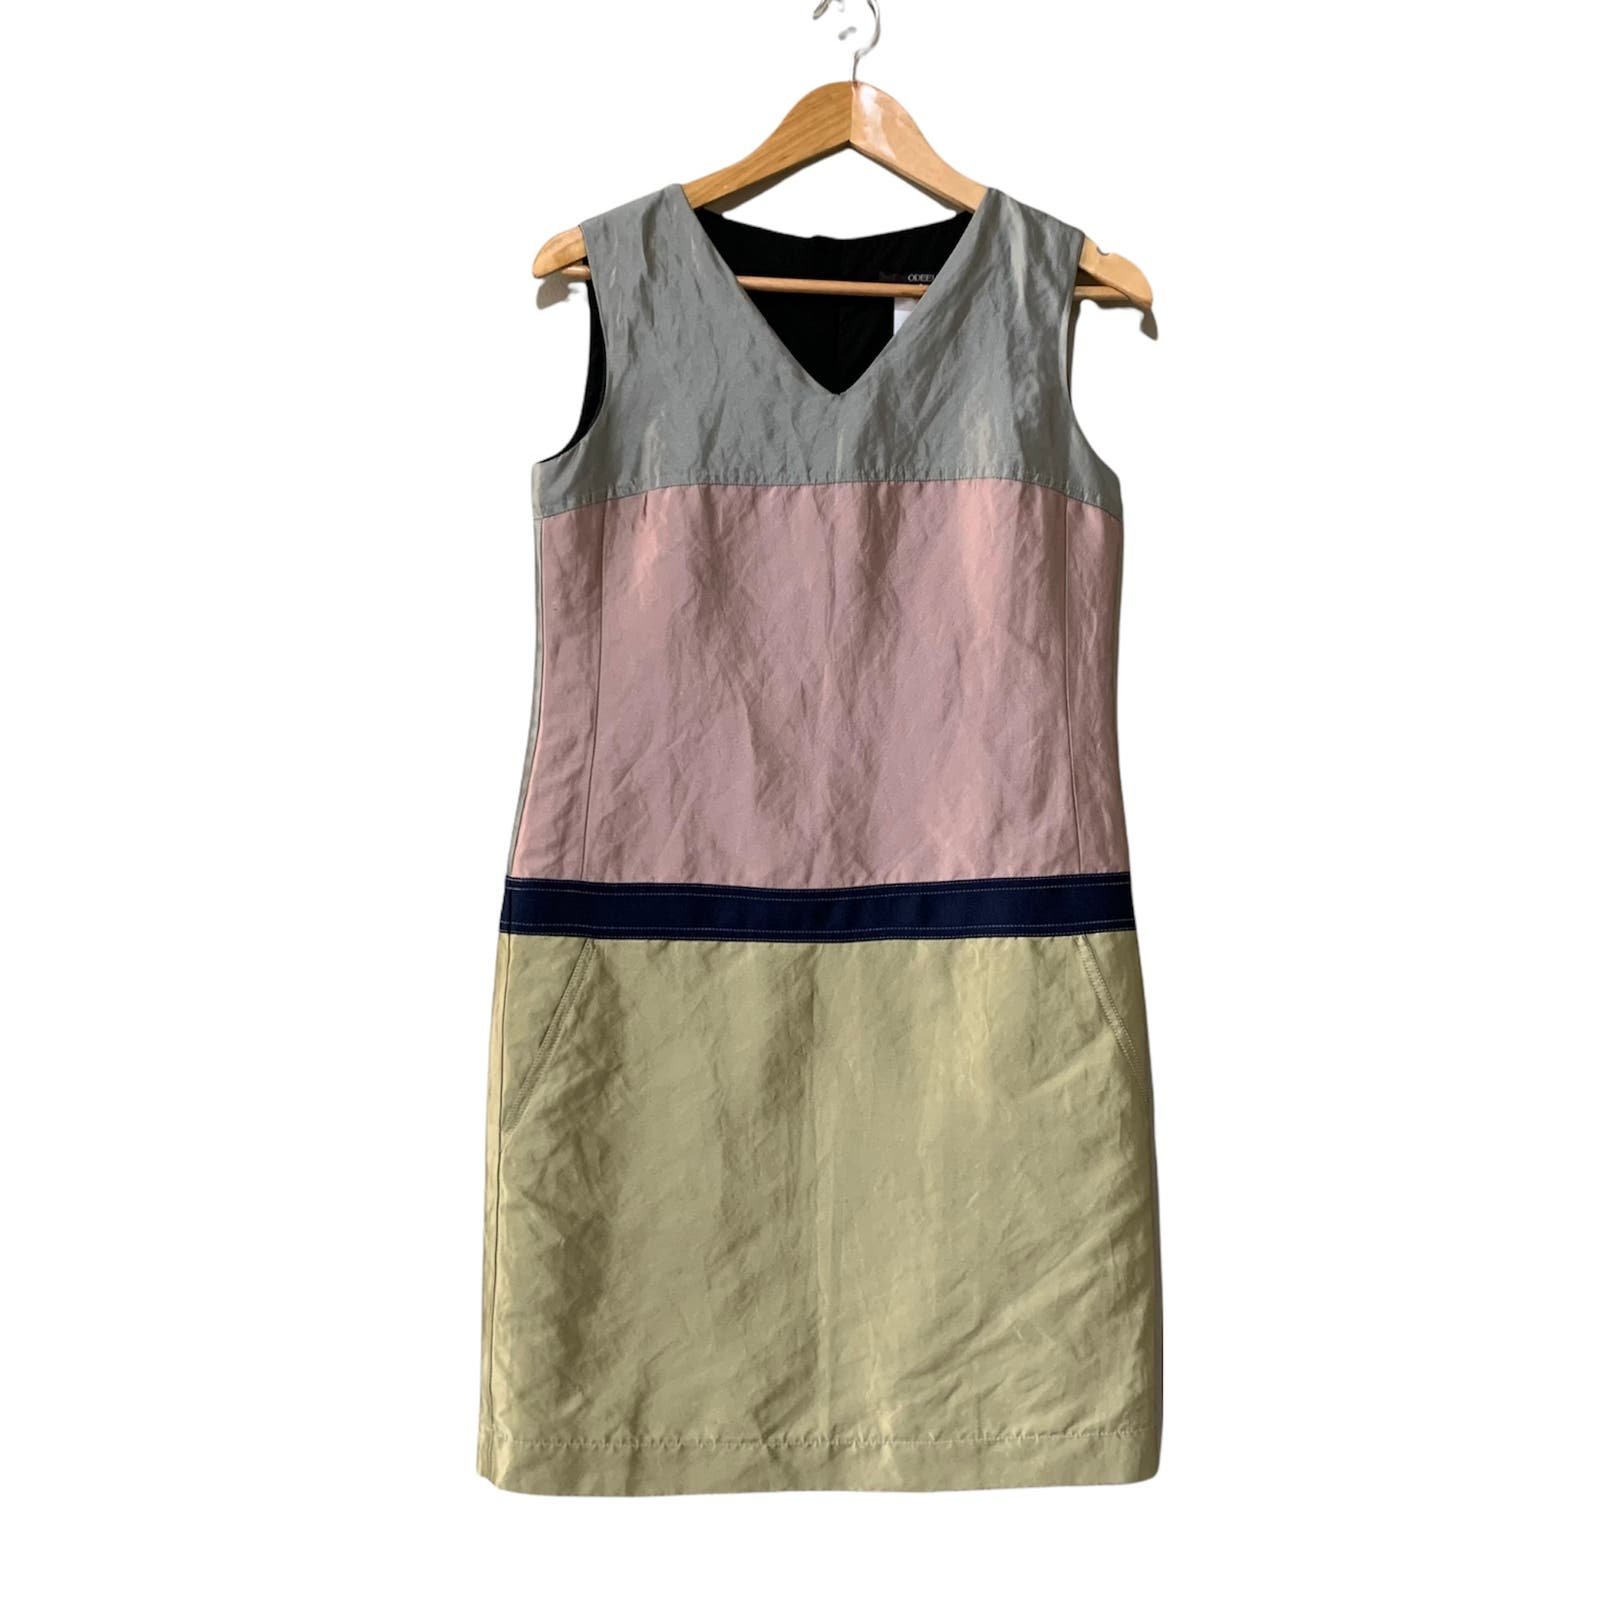 Odeeh Metallic Pastel Sleeveless Dress Size Small (34 ~